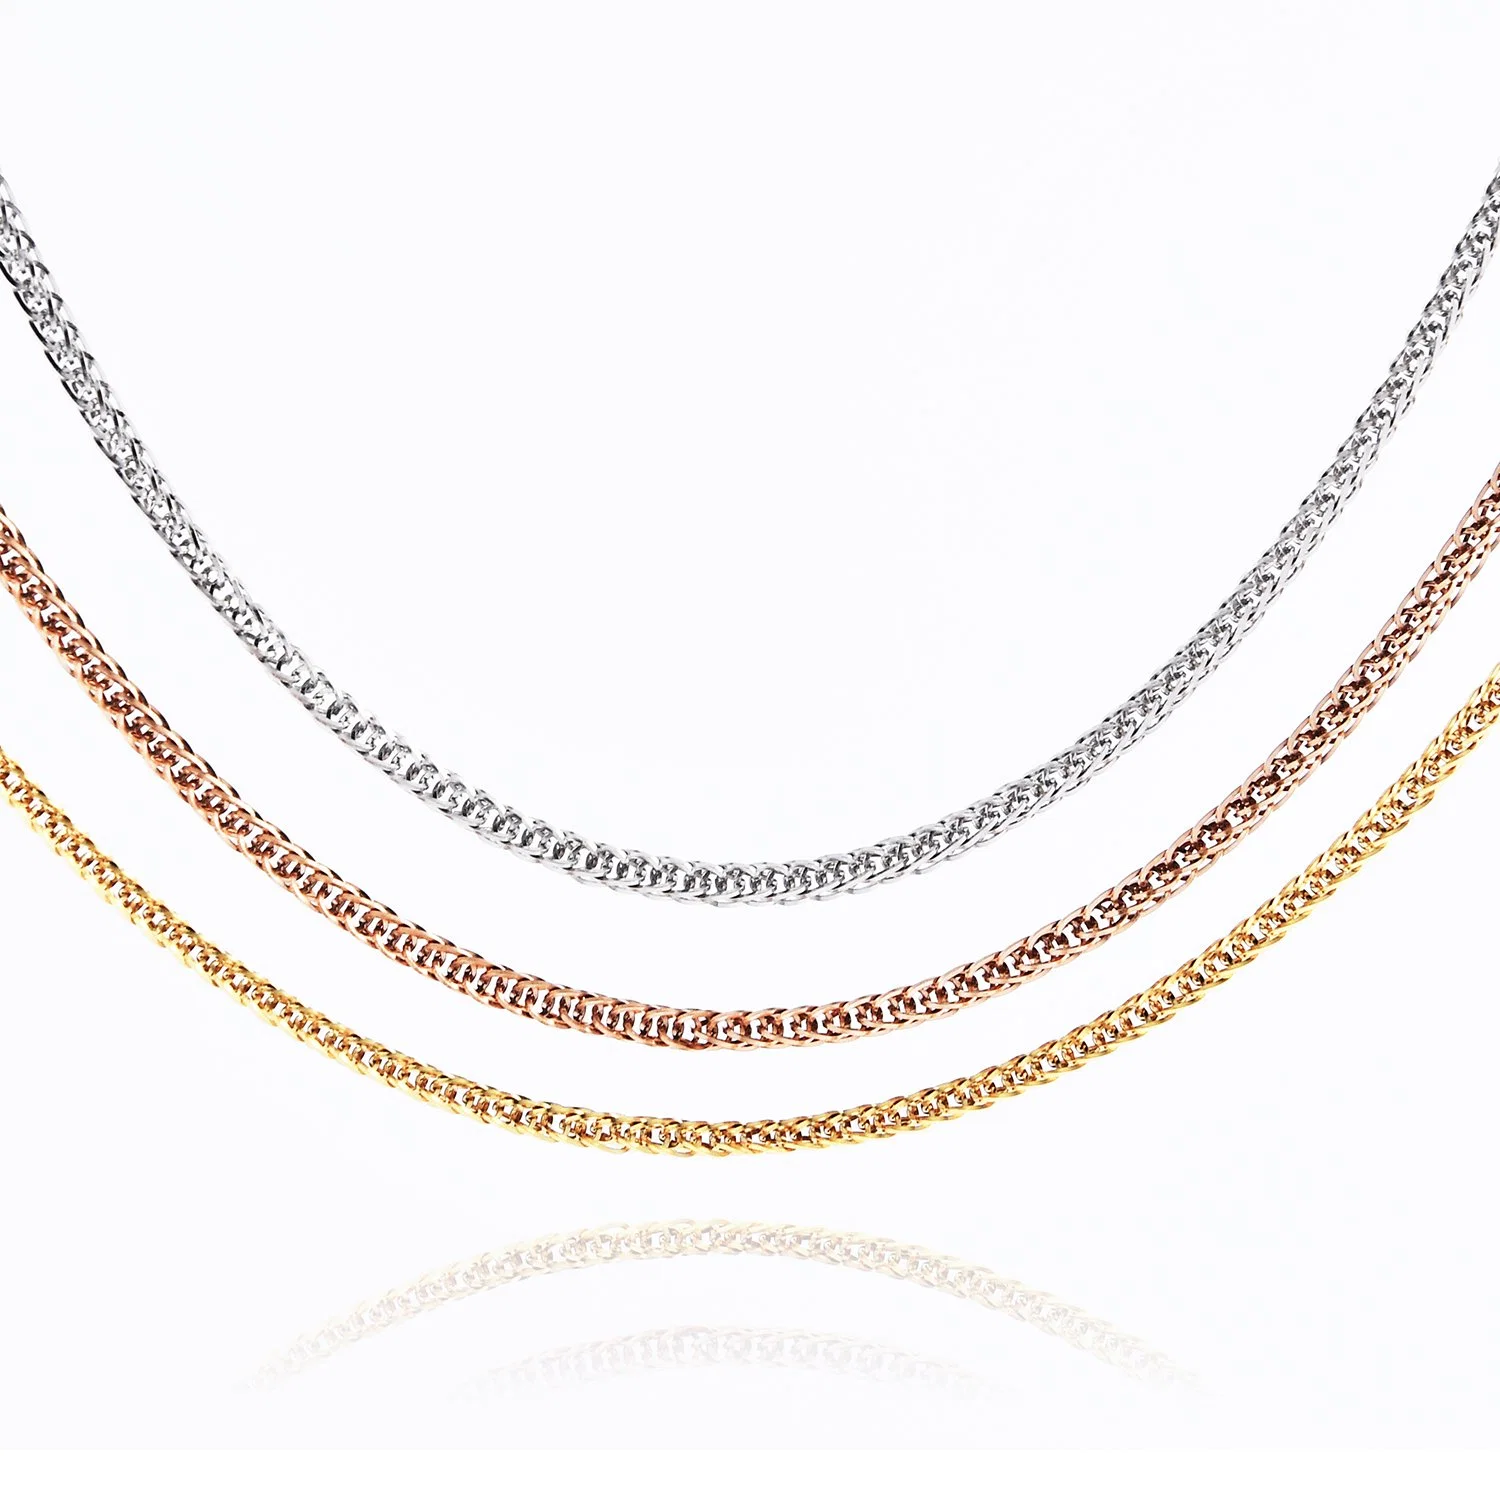 Comercio al por mayor Collar de trigo de la cadena de Joyas de acero inoxidable para la fabricación de joyas (bolsa de regalo de cristal de Sol Accesorios).